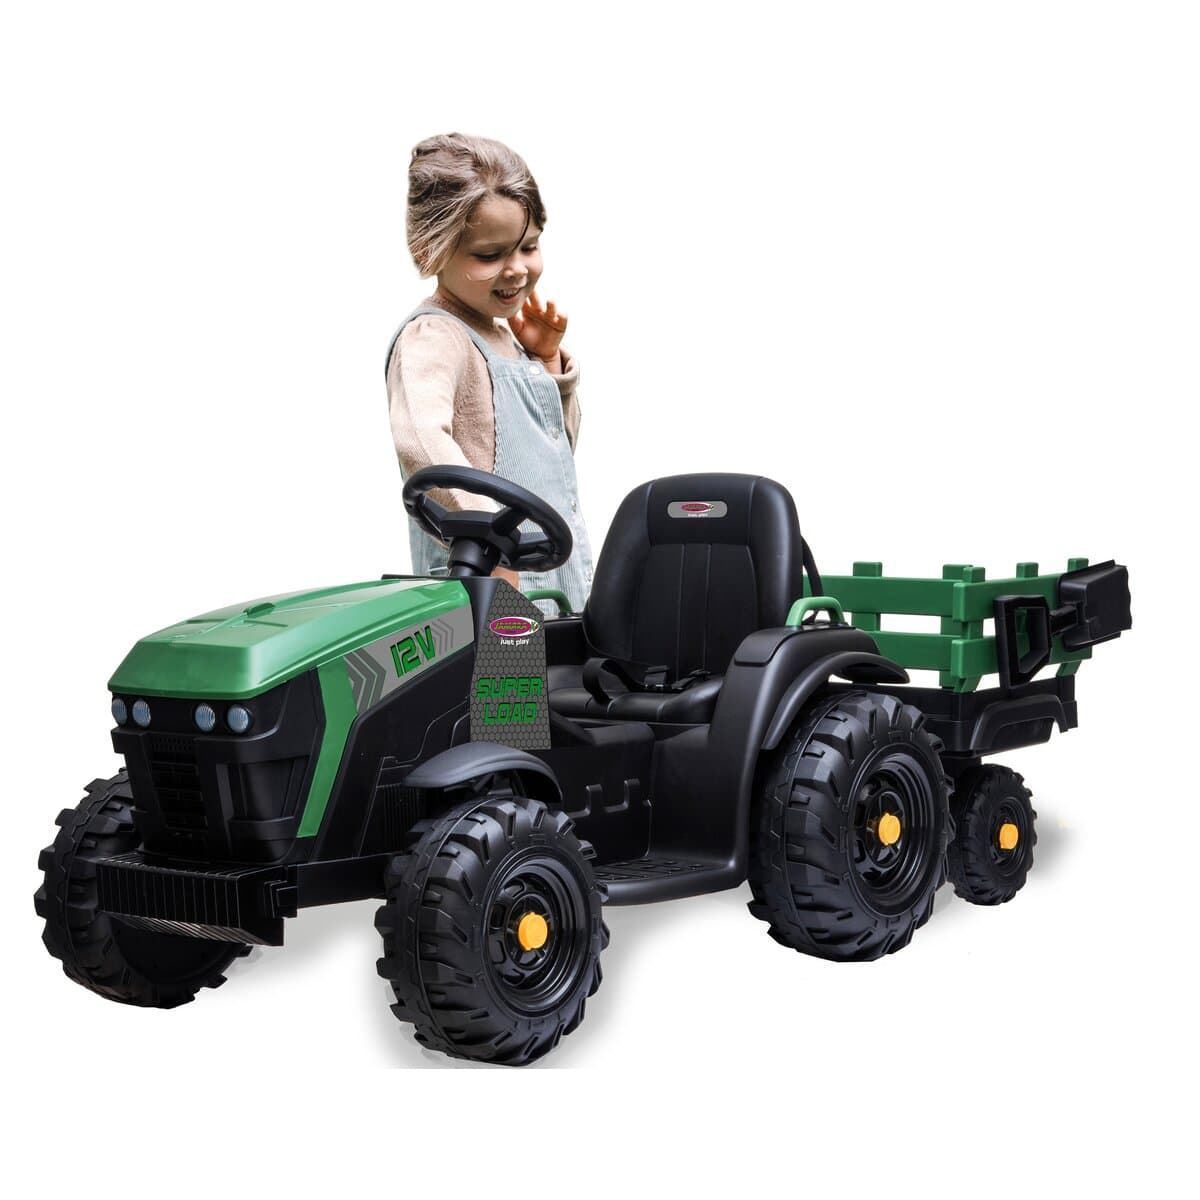 Tractor de batería 12v con remolque verde jamara 460896 - Imagen 3